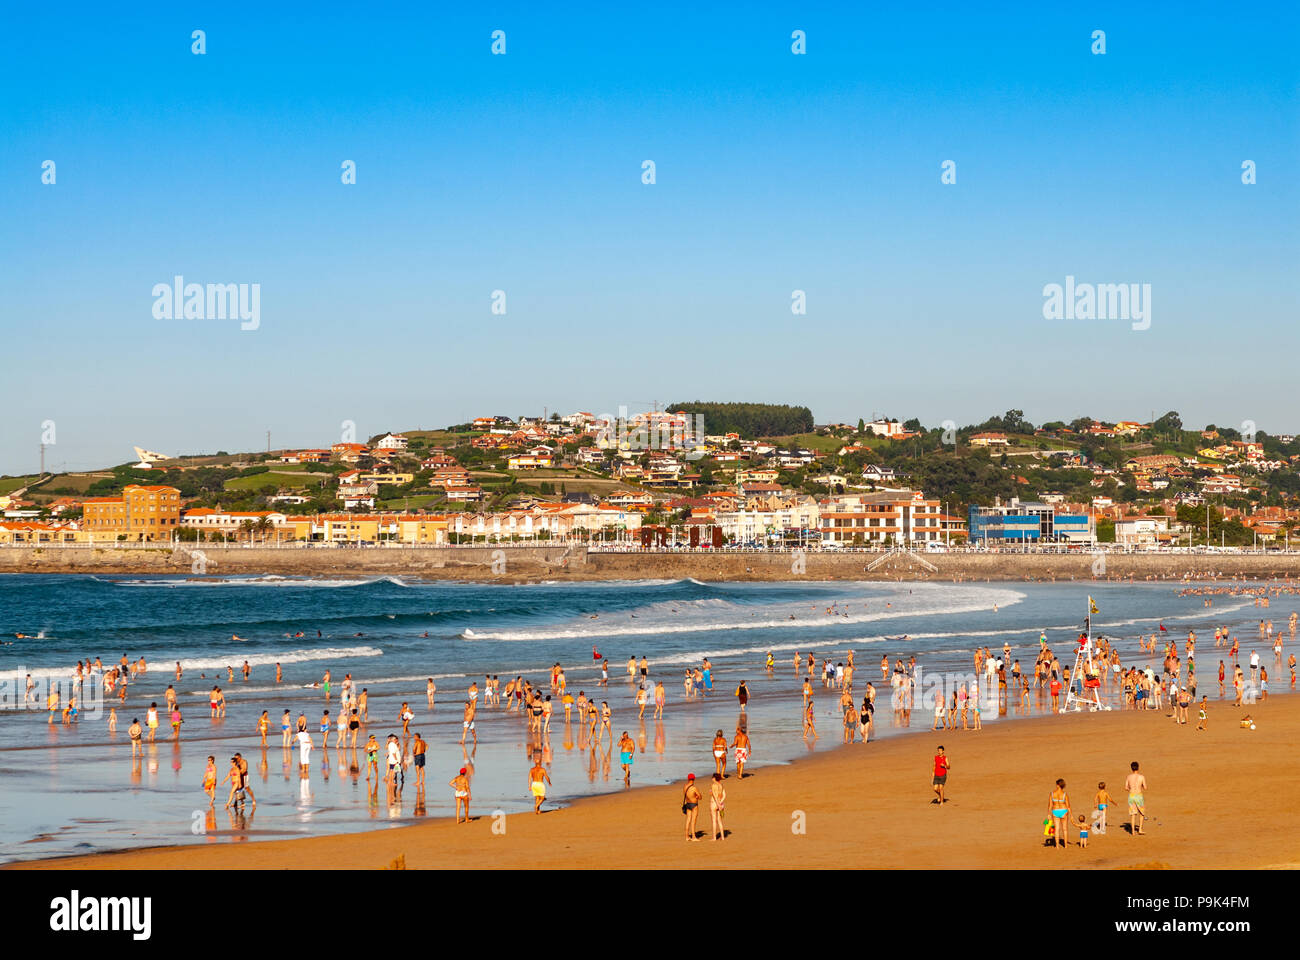 San Lorenzo beach, Gijon, Asturias, Spain Stock Photo